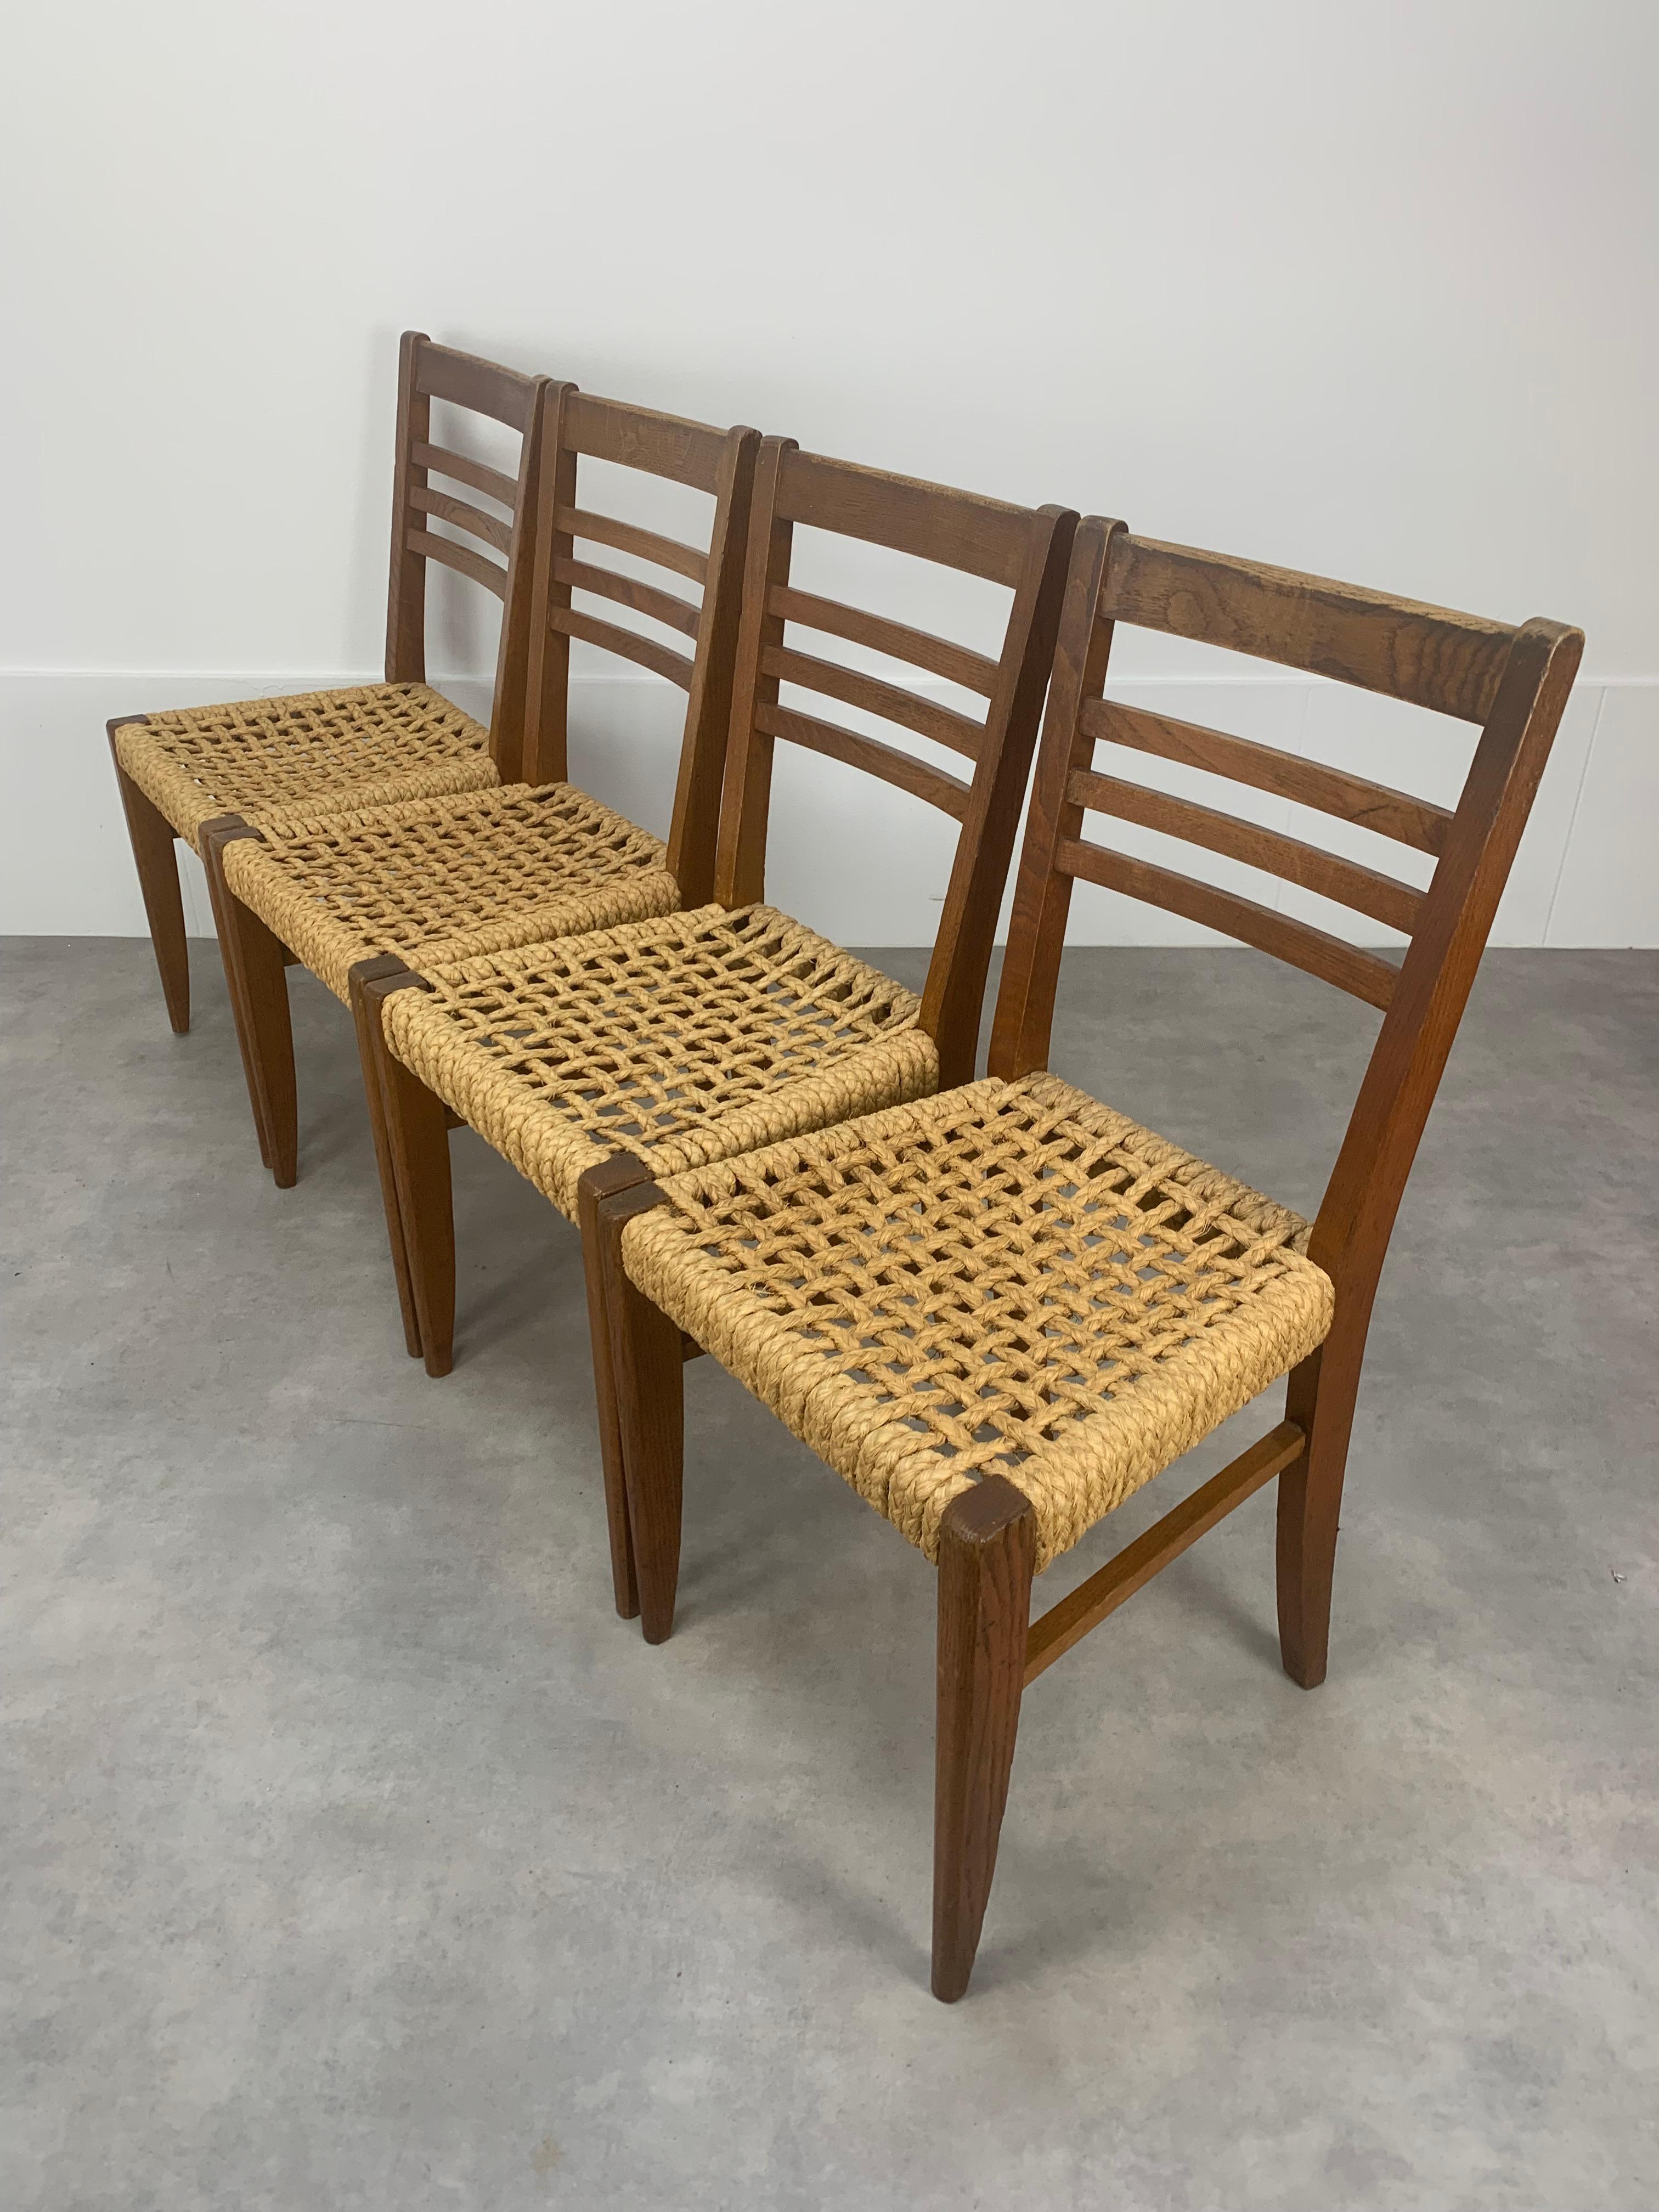 Satz von vier Stühlen von Adrien Audoux und Frida Minet für Vibo Vesoul. Sehr sauber und stabil. 